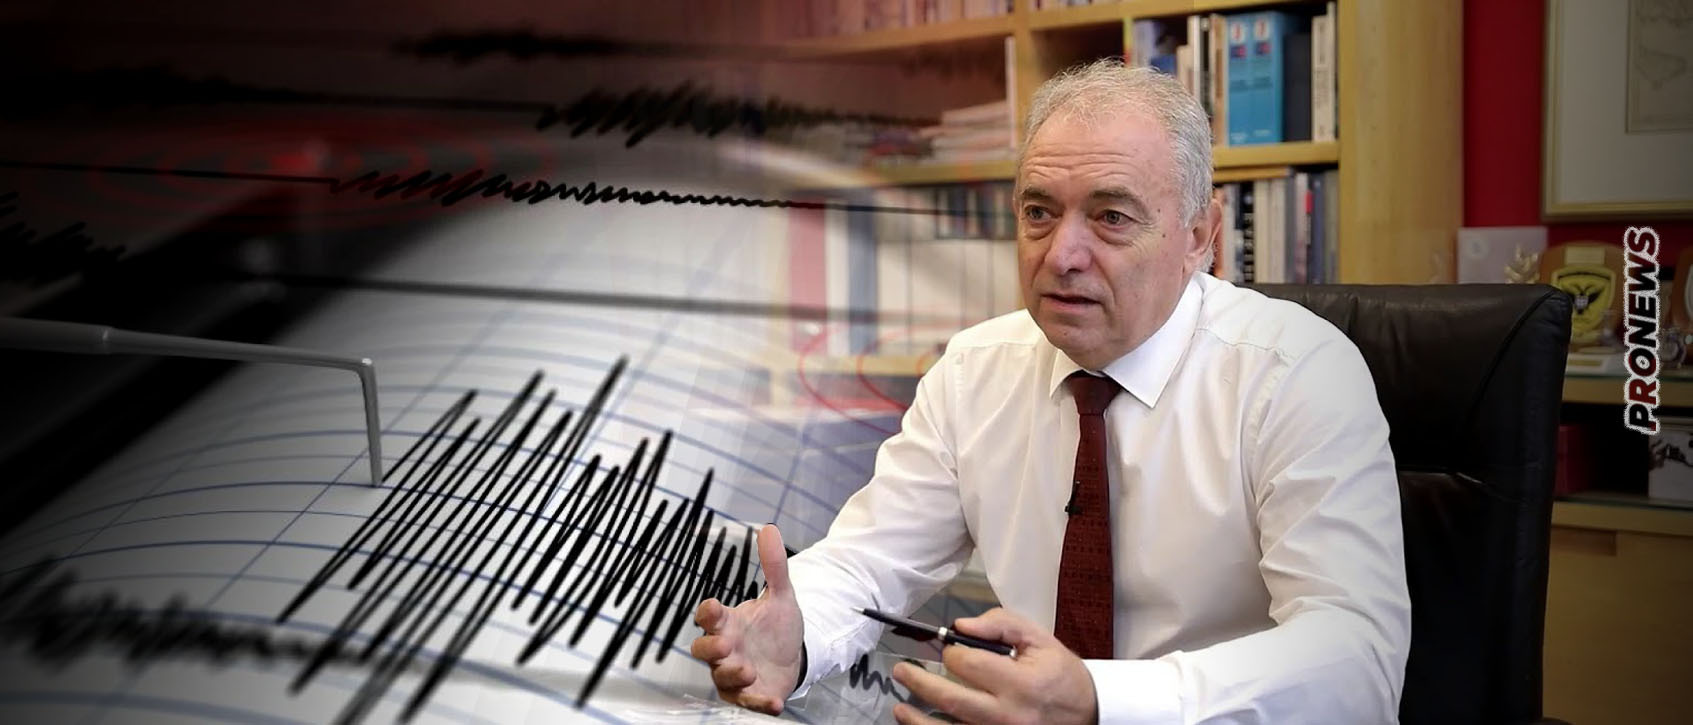 Ε.Λέκκας για τον σεισμό στην Τουρκία: «Το ρήγμα αυτό είχε δώσει το ’99 τον σεισμό των 7,4 βαθμών» – Πώς συνδέεται με την Ελλάδα